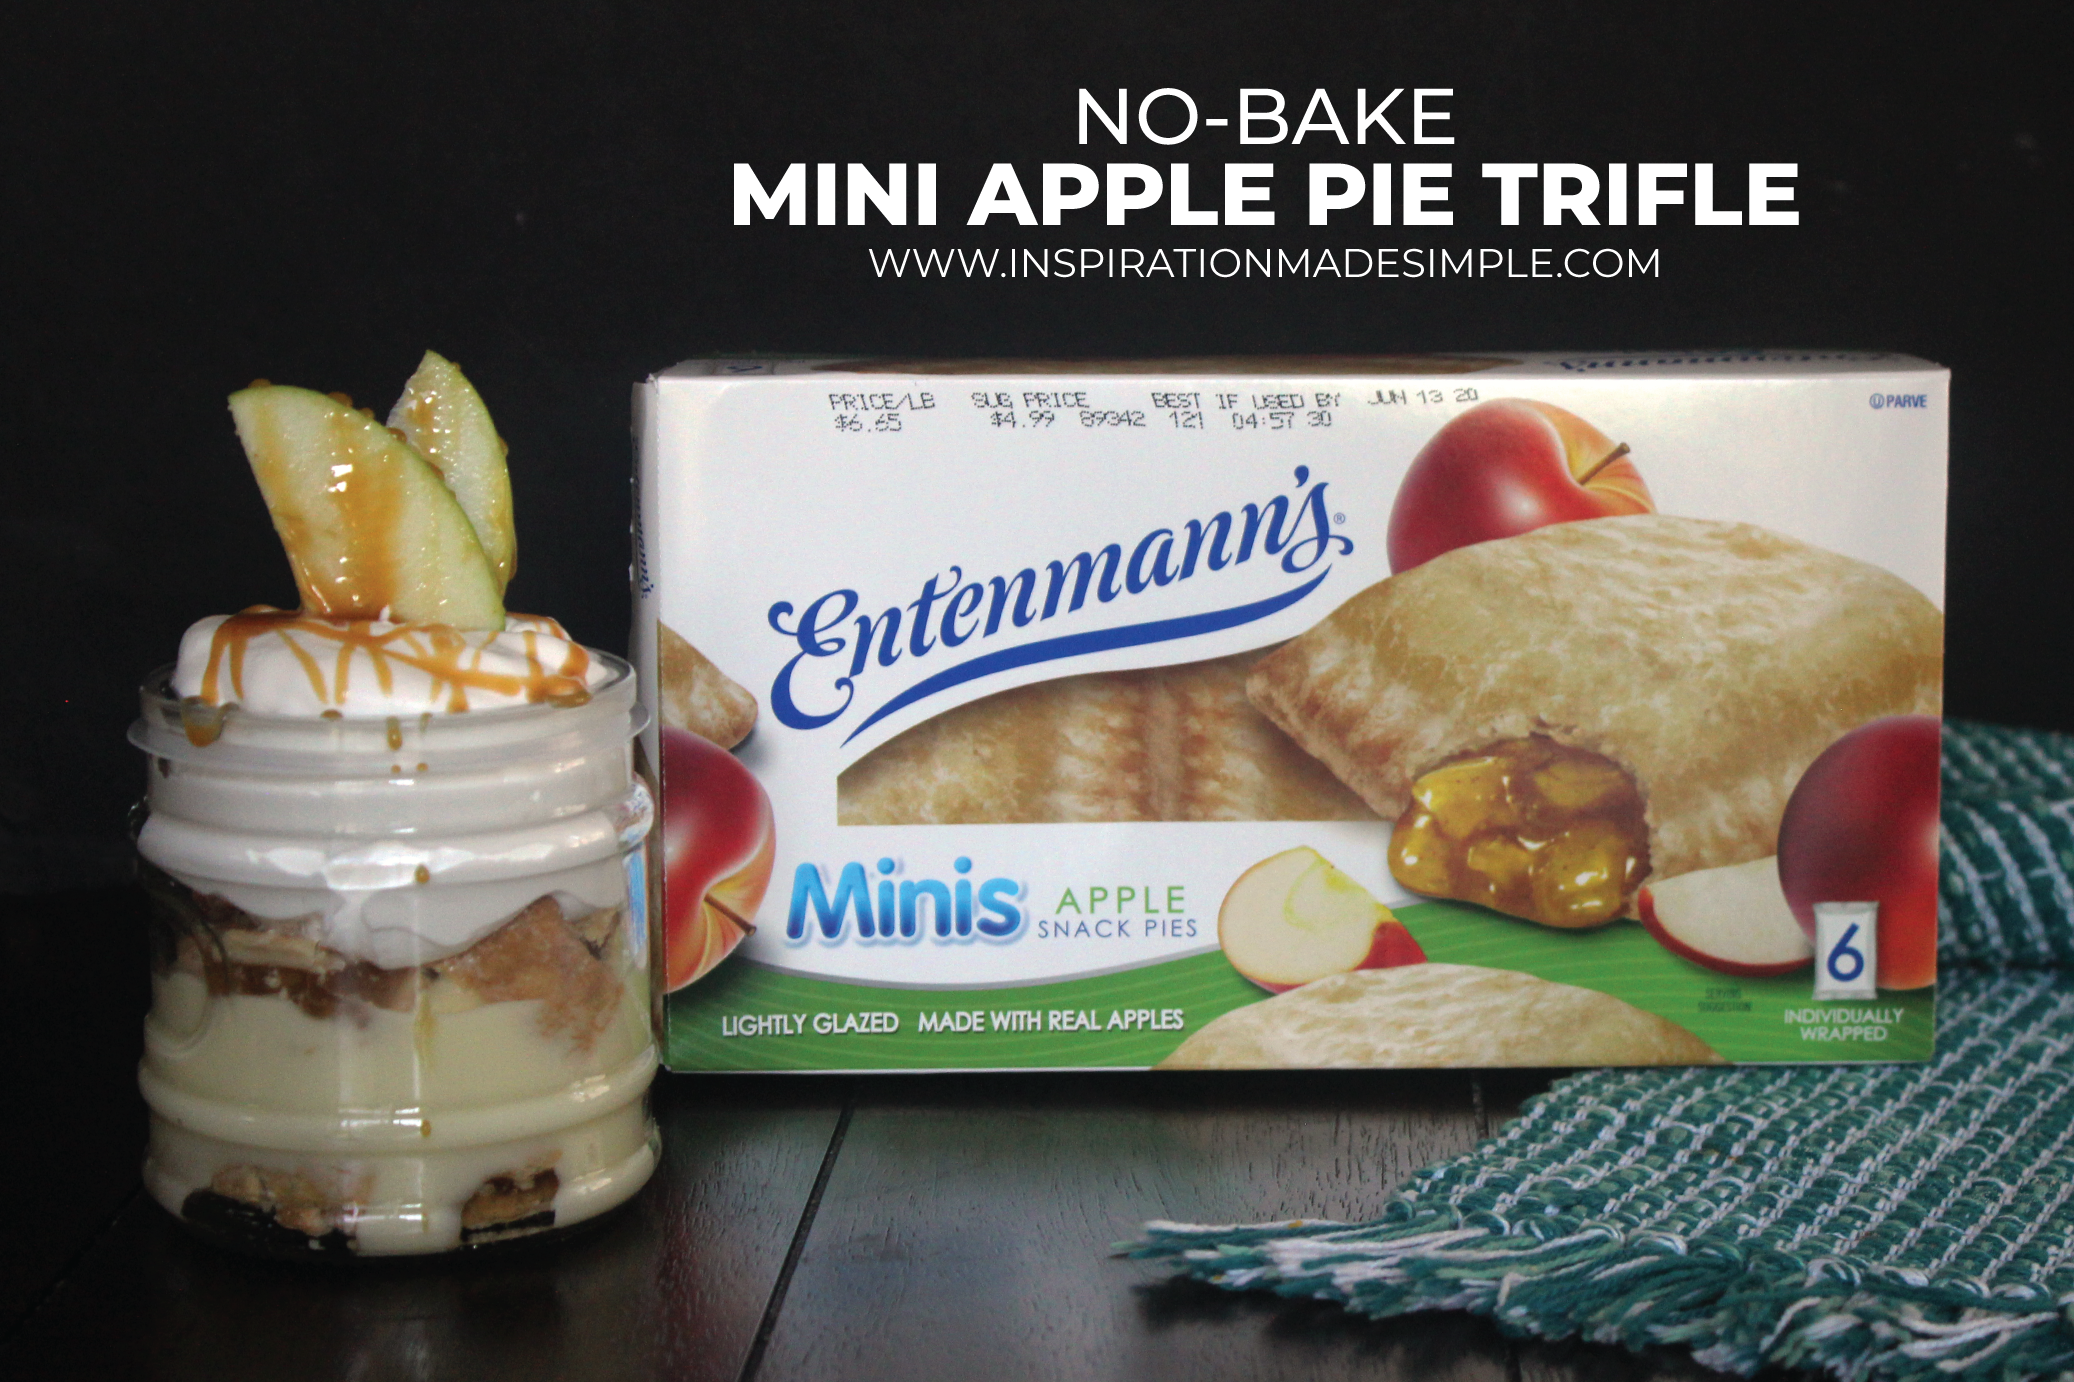 No-Bake Mini Apple Pie Trifle with Entenmann’s® Minis Apple Snack Pies